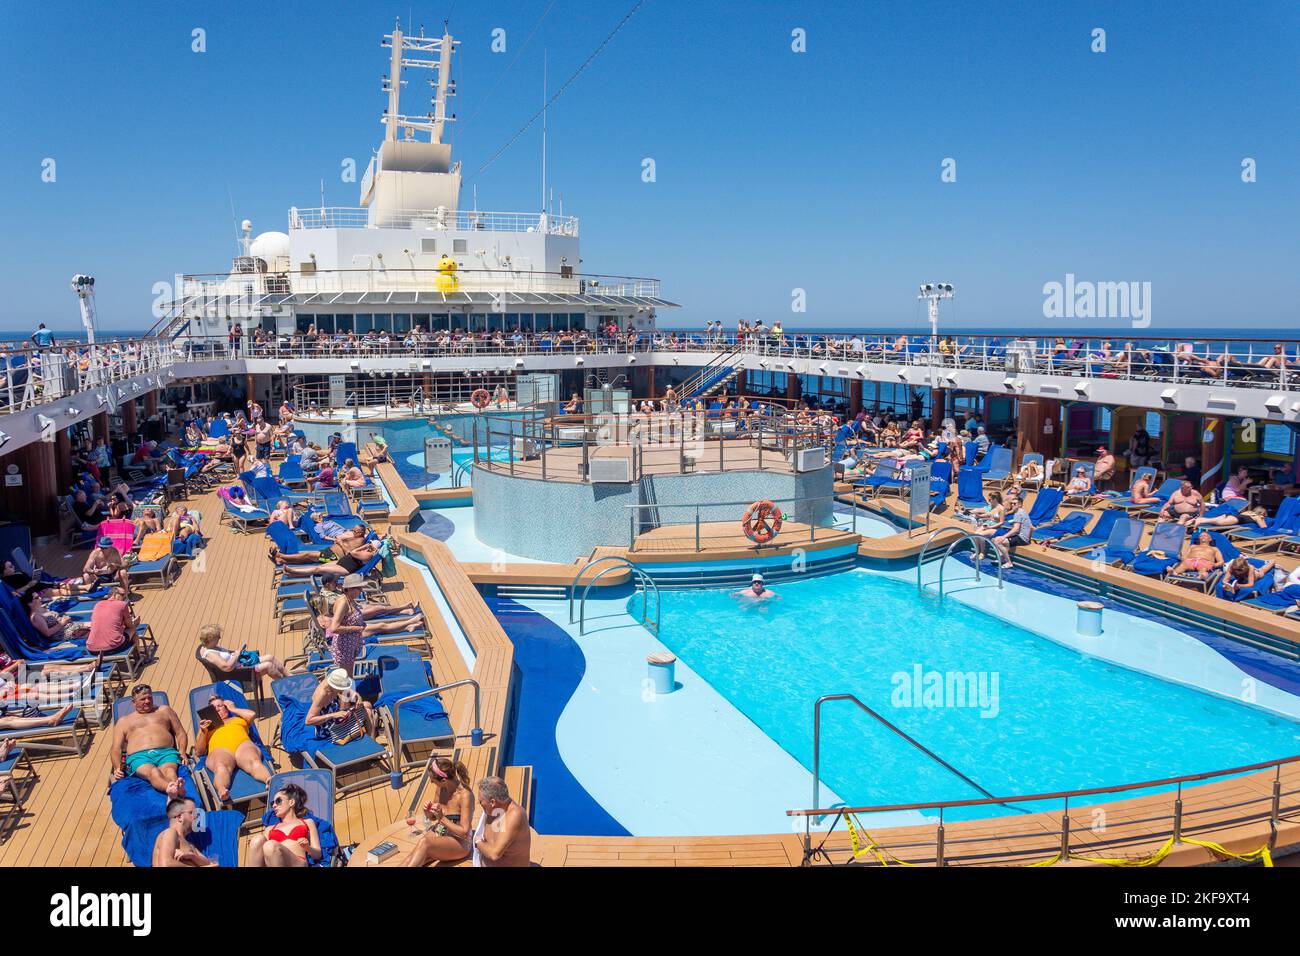 Terrasse de la piscine du bateau de croisière Marella Explorer, Mer Adriatique, Mer méditerranée, Europe Banque D'Images